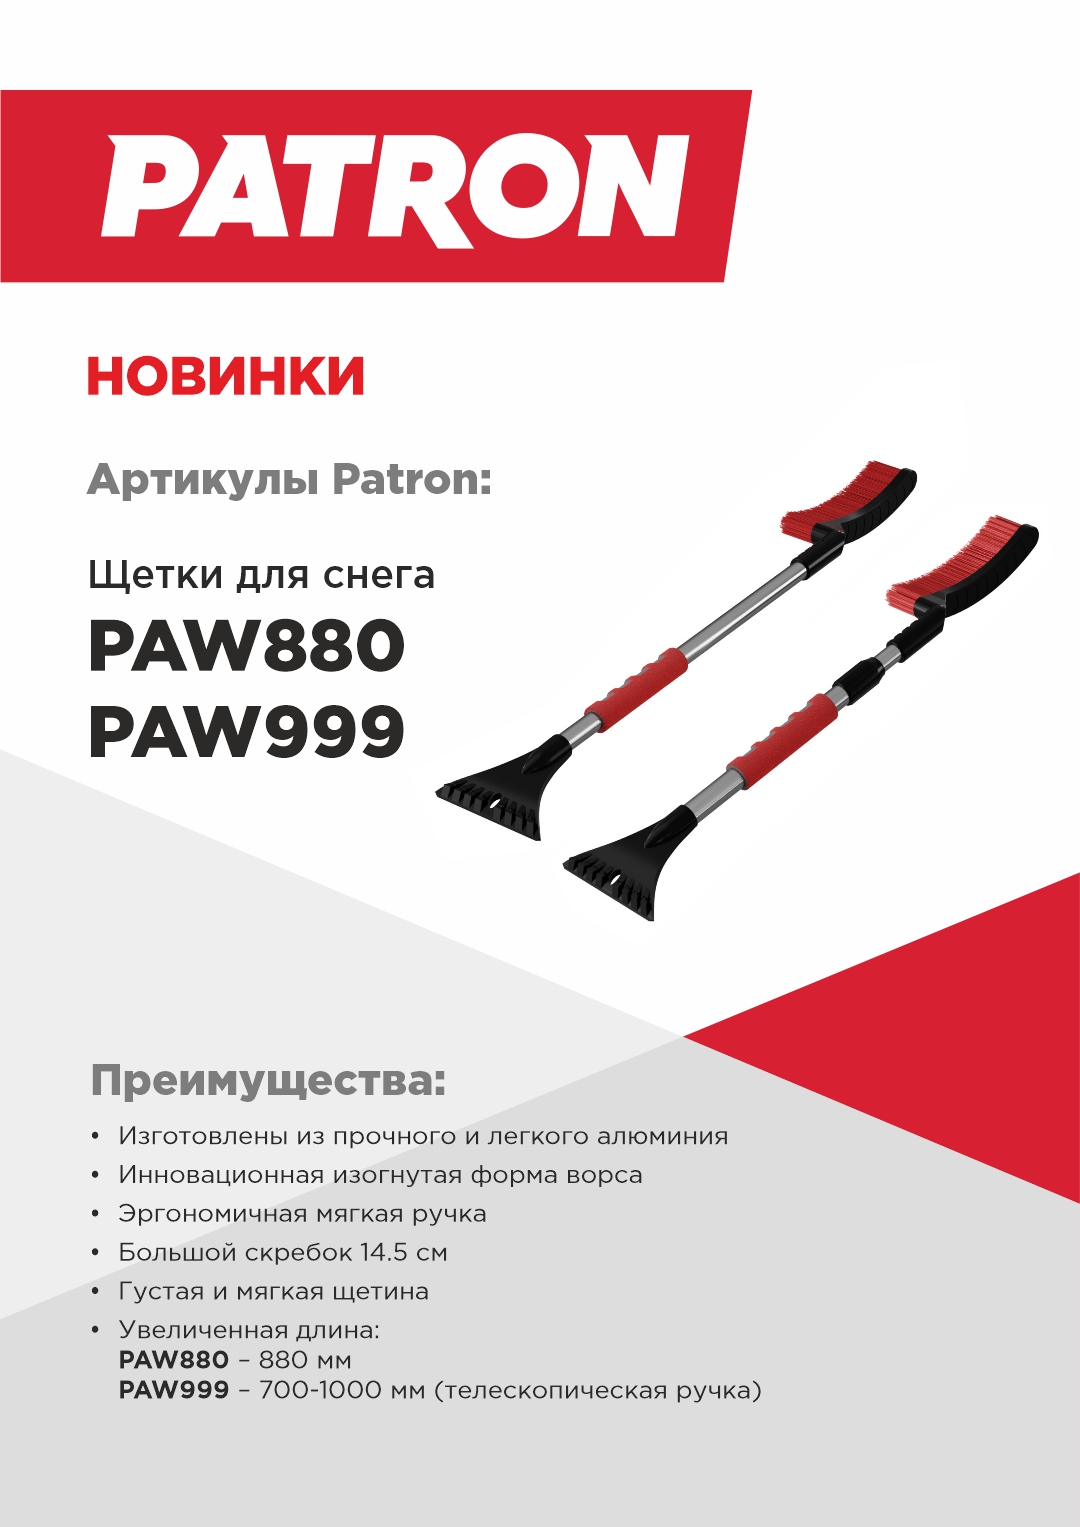 NEW_Patron_PAW880_PAW999